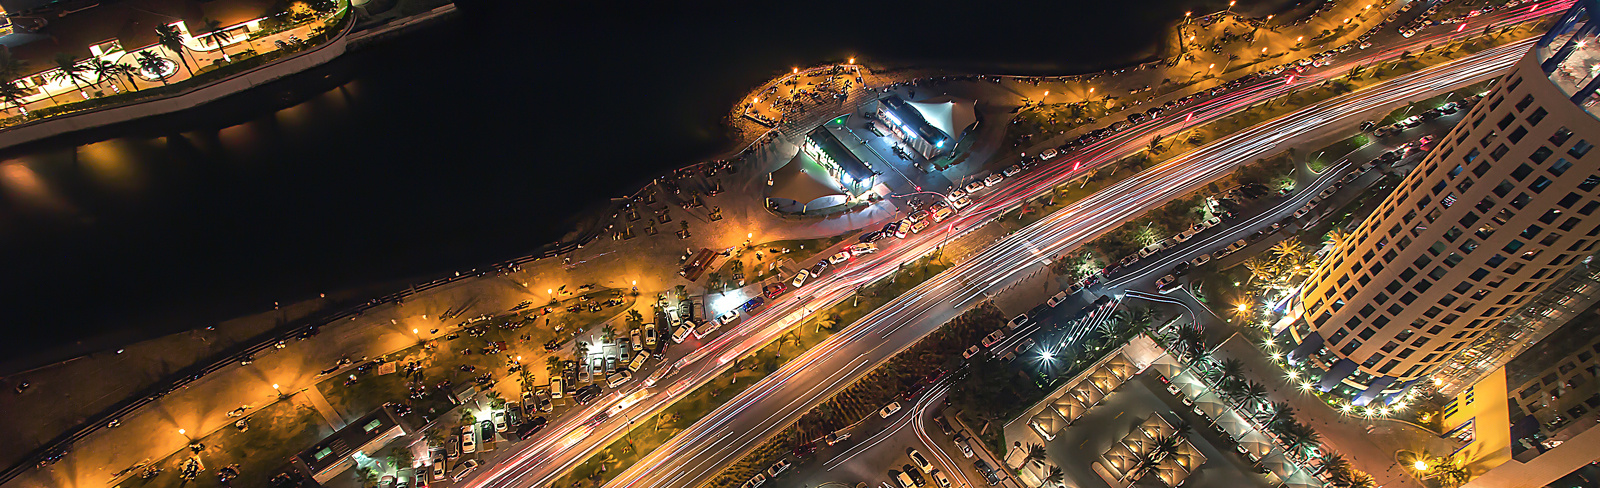 Image of Jeddah, Saudi Arabia